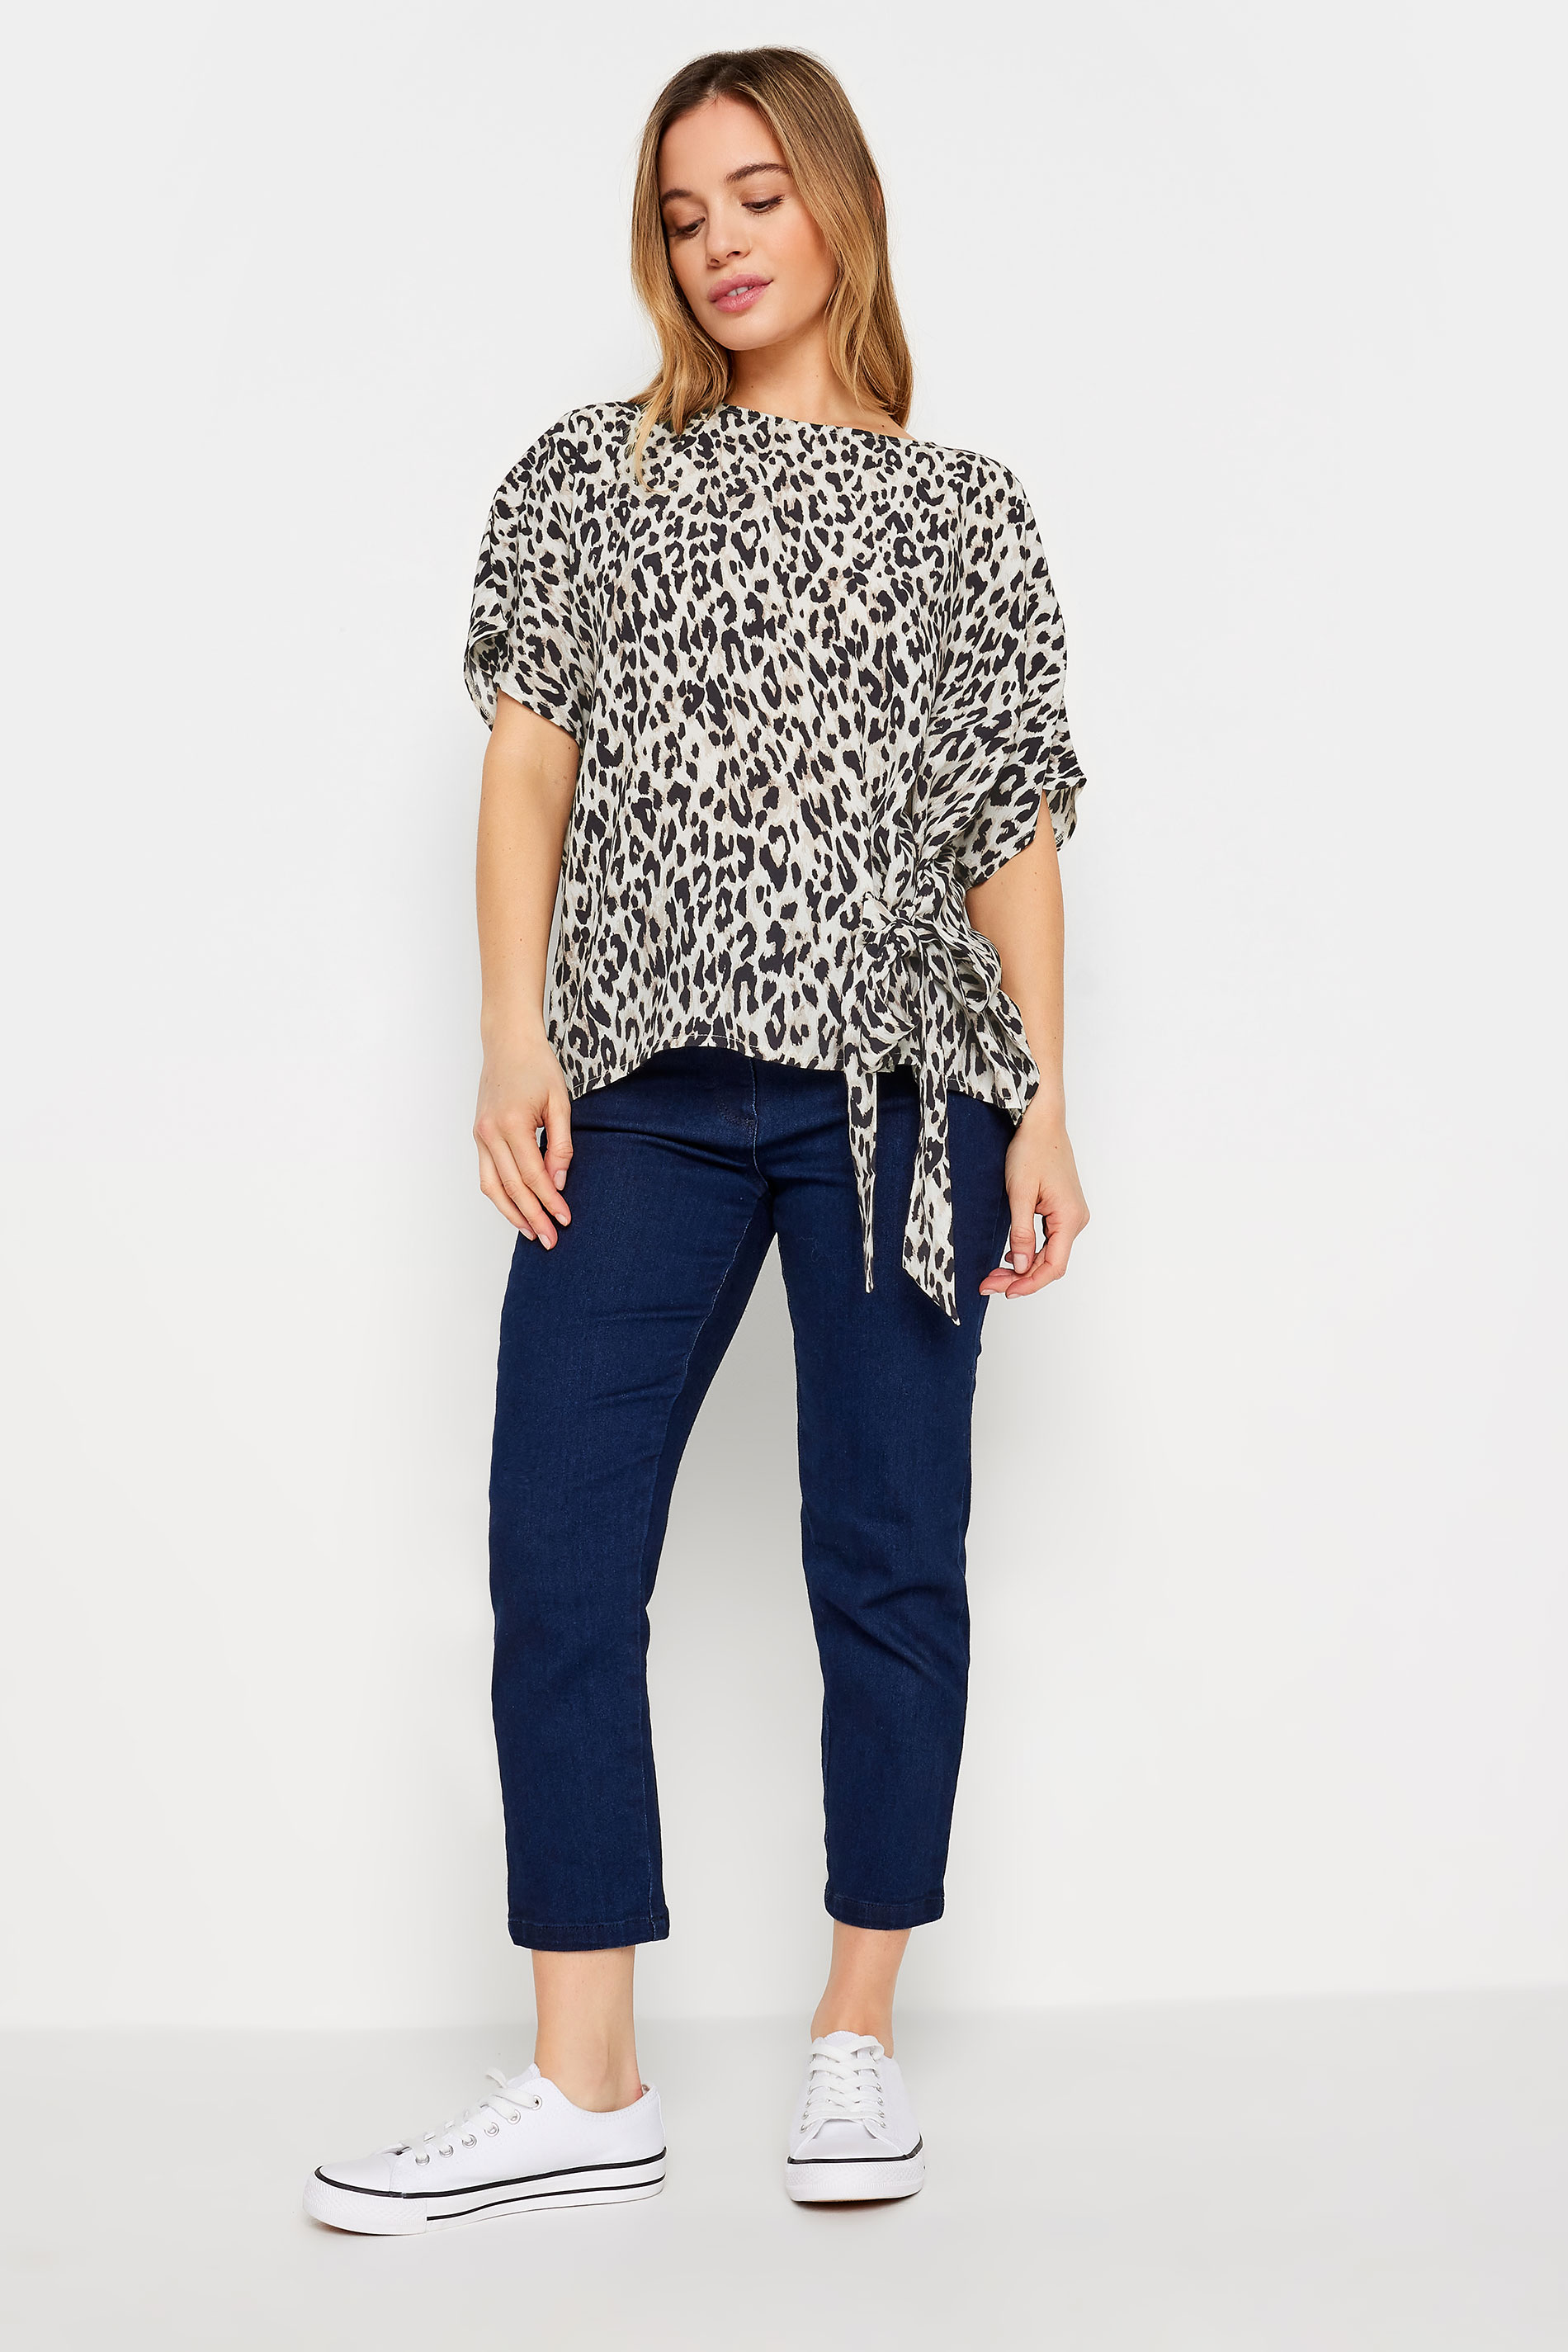 M&Co Petite Natural Brown Leopard Print Tie Side Detail Blouse | M&Co  2